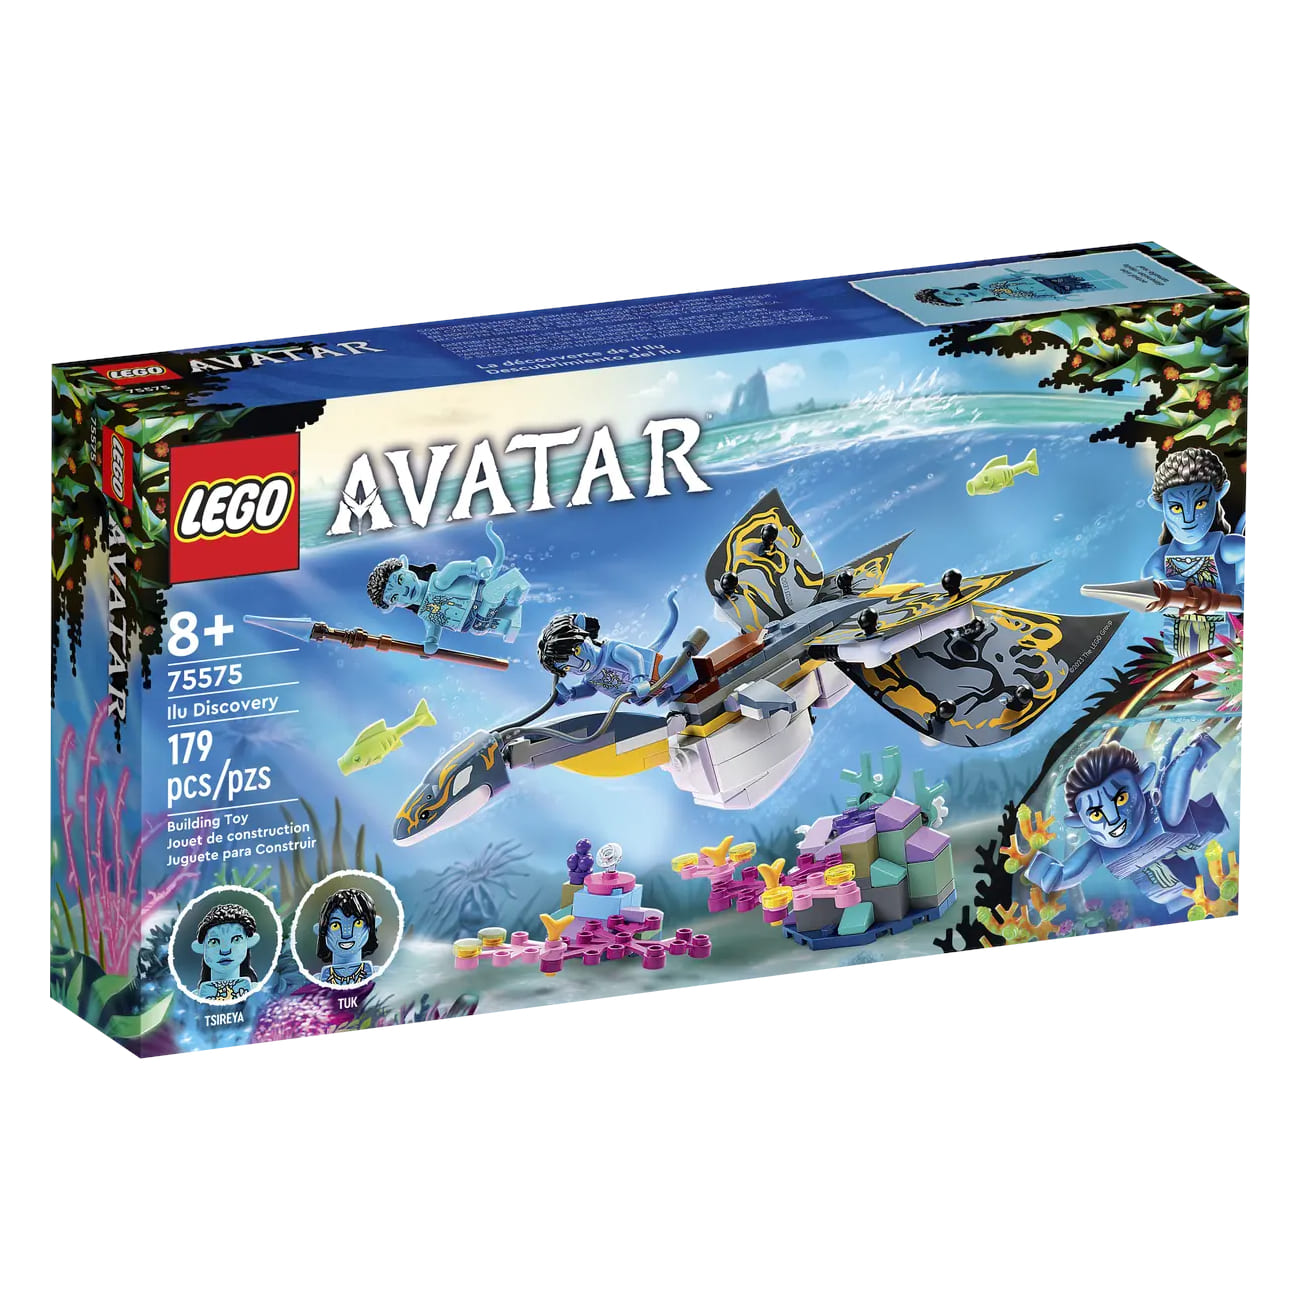 Конструктор LEGO Avatar Ilu Discovery 75575, 179 деталей lego lego avatar открытие илу 179 деталей